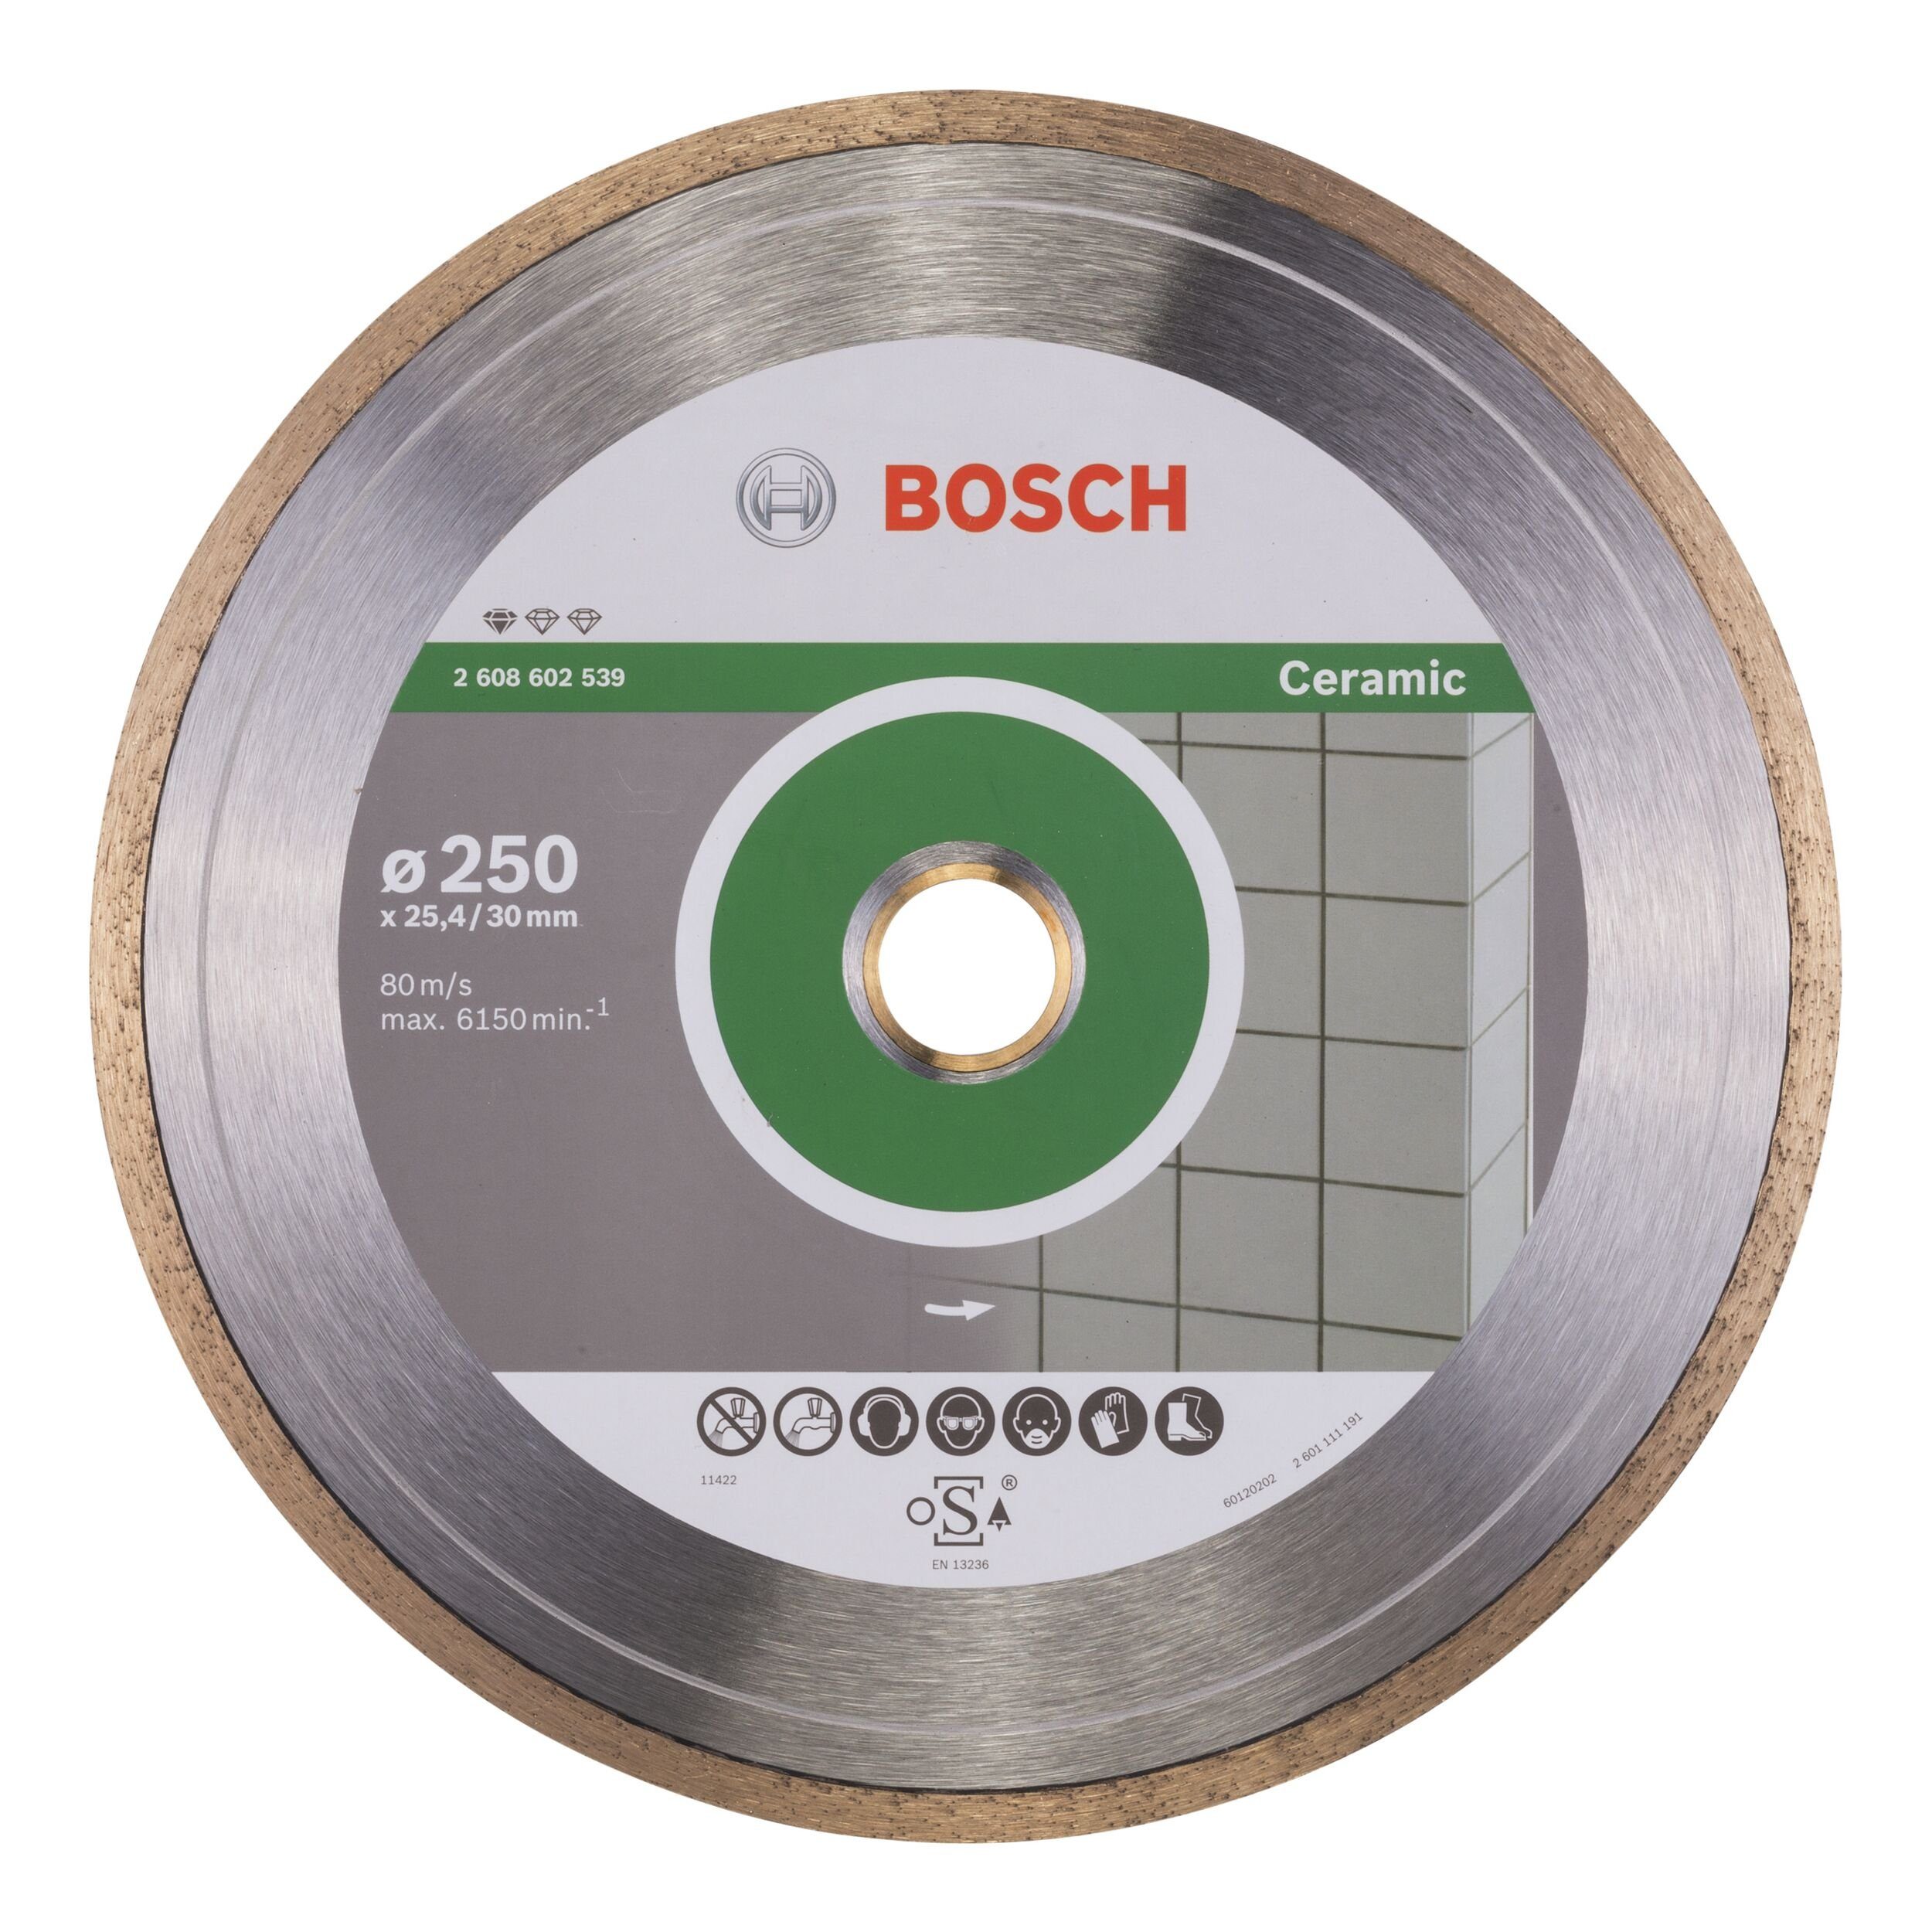 BOSCH Trennscheibe, Ø 250 mm, Standard for Ceramic Diamanttrennscheibe - 250 x 30/25,4 x 1,6 x 7 mm